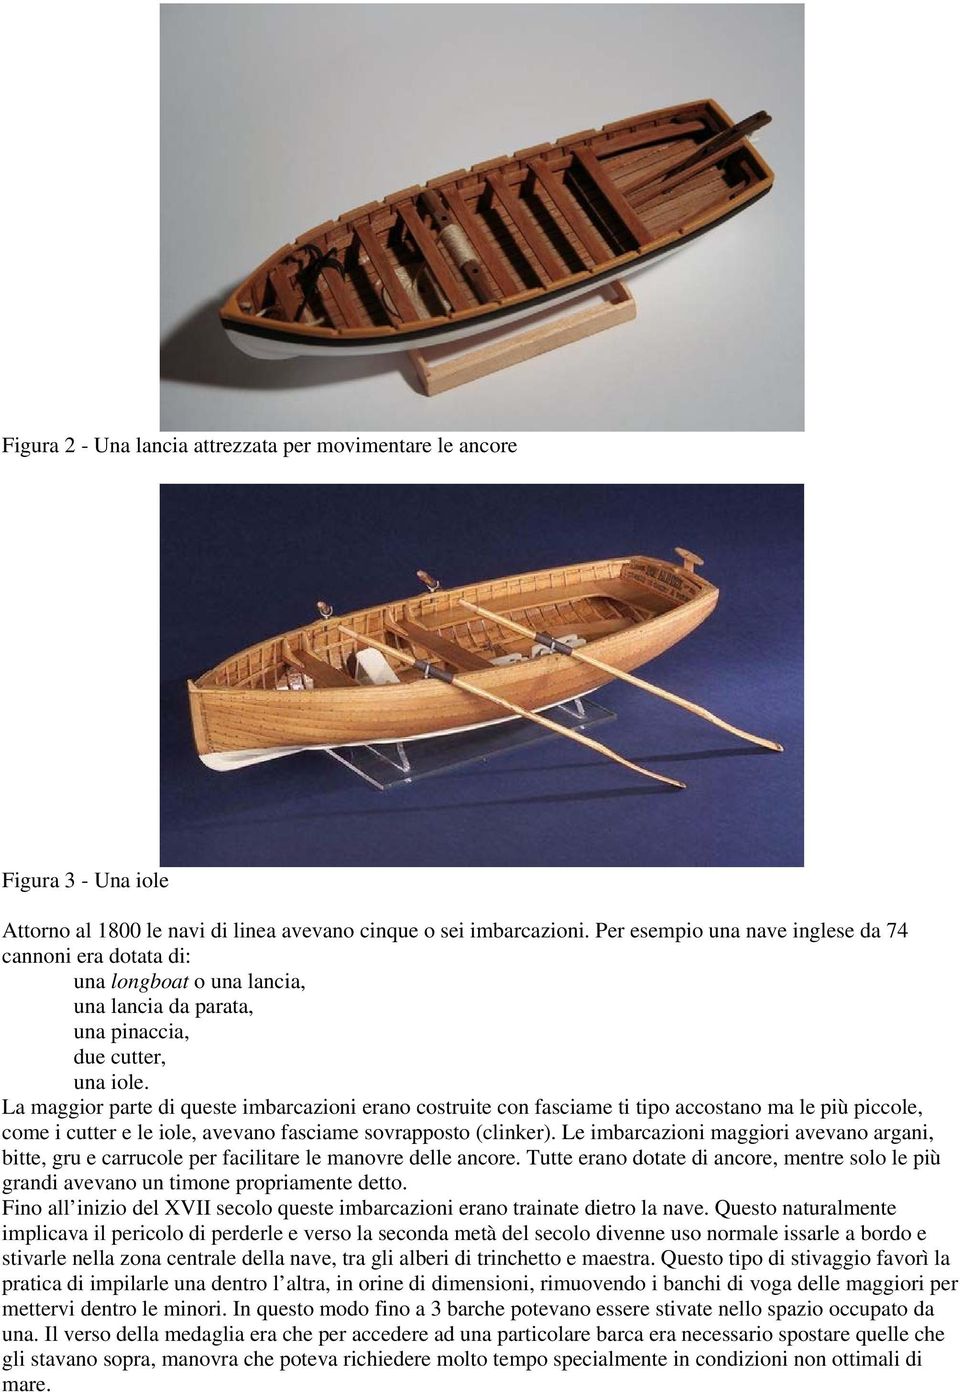 La maggior parte di queste imbarcazioni erano costruite con fasciame ti tipo accostano ma le più piccole, come i cutter e le iole, avevano fasciame sovrapposto (clinker).